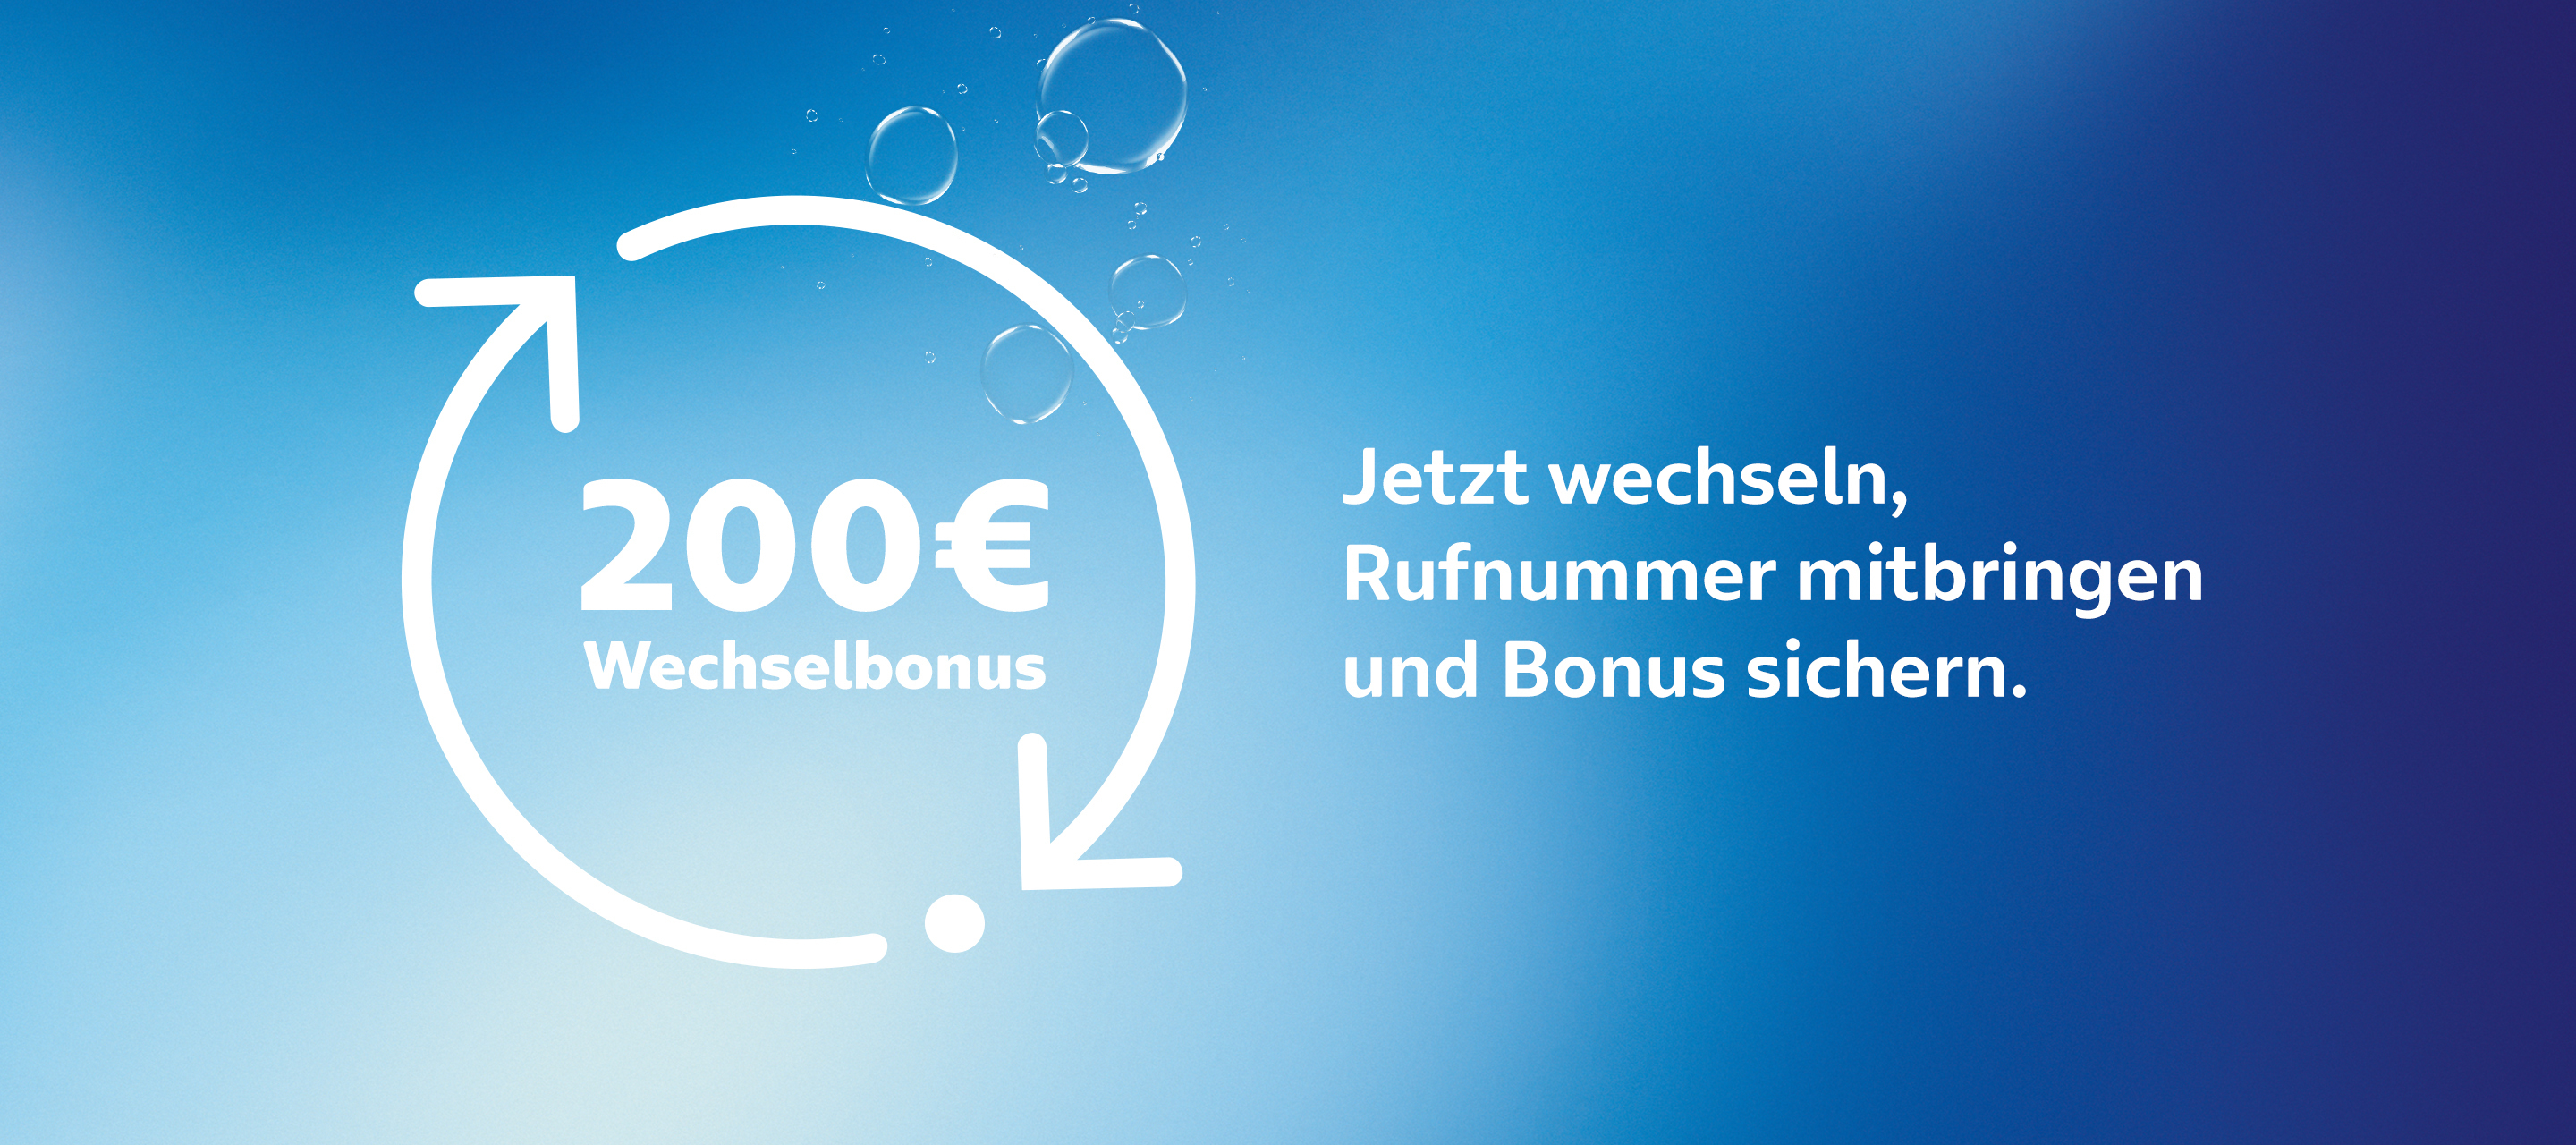 Sichert euch bis zu 200 EUR Wechselbonus – Jetzt auch für O₂ Bestandskund:innen